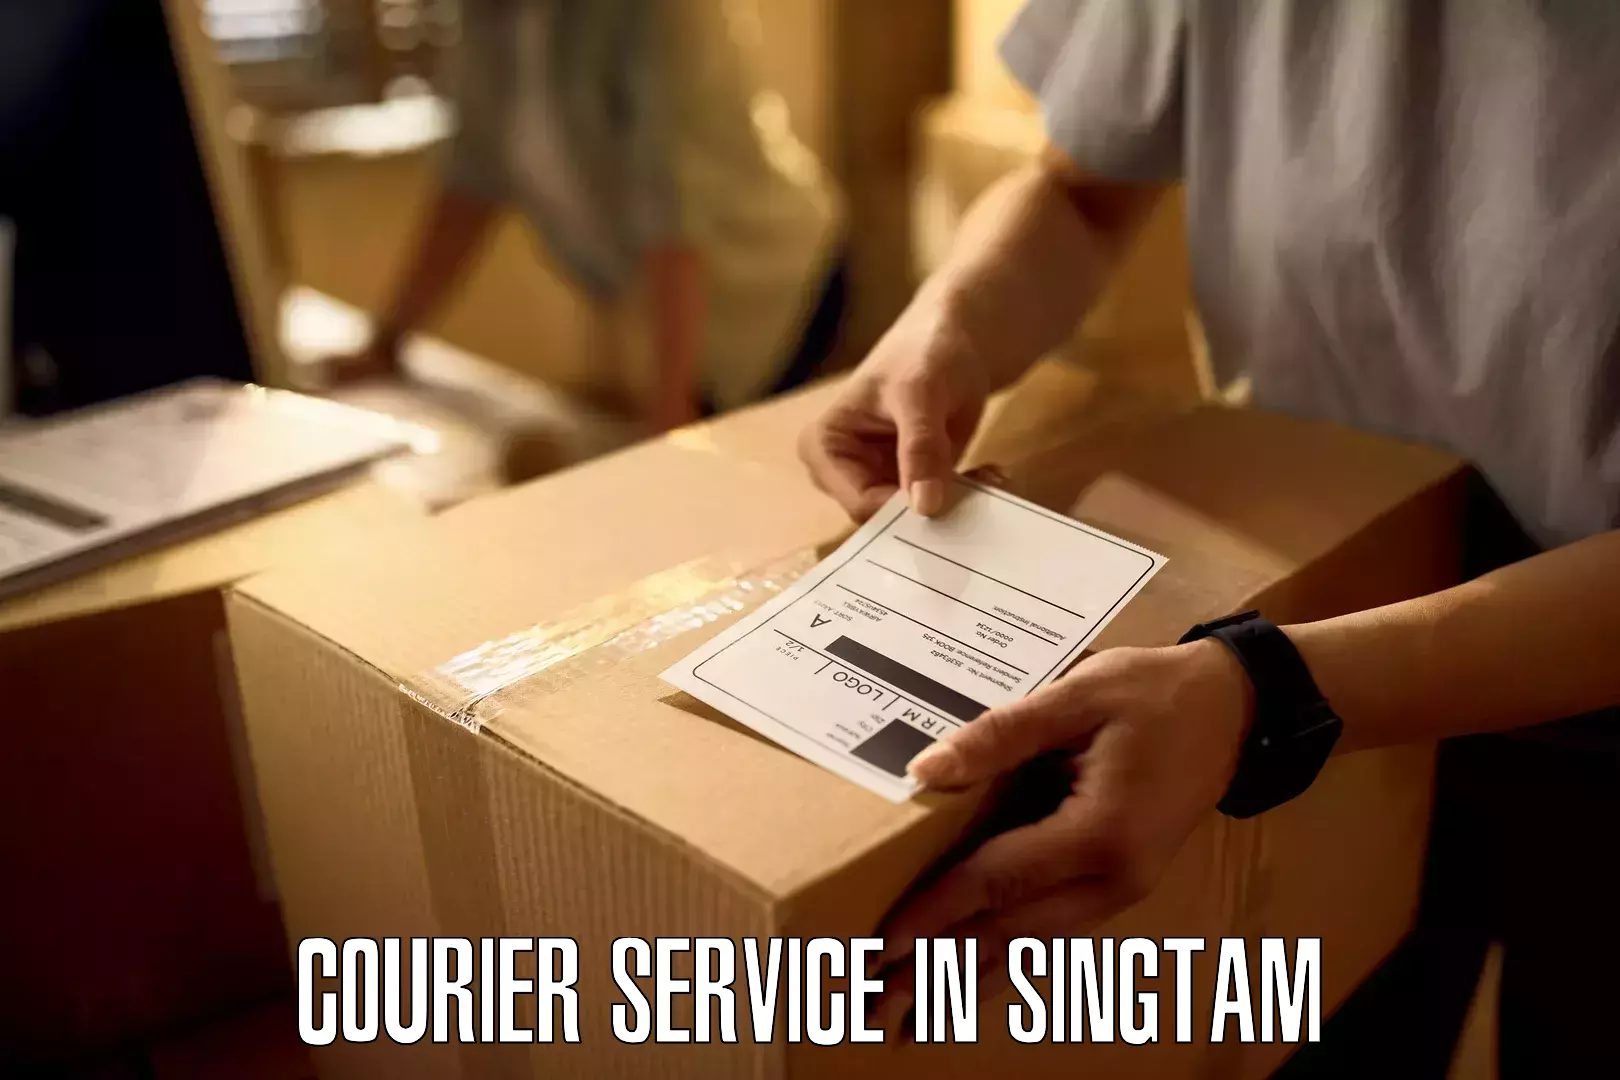 24/7 courier service in Singtam